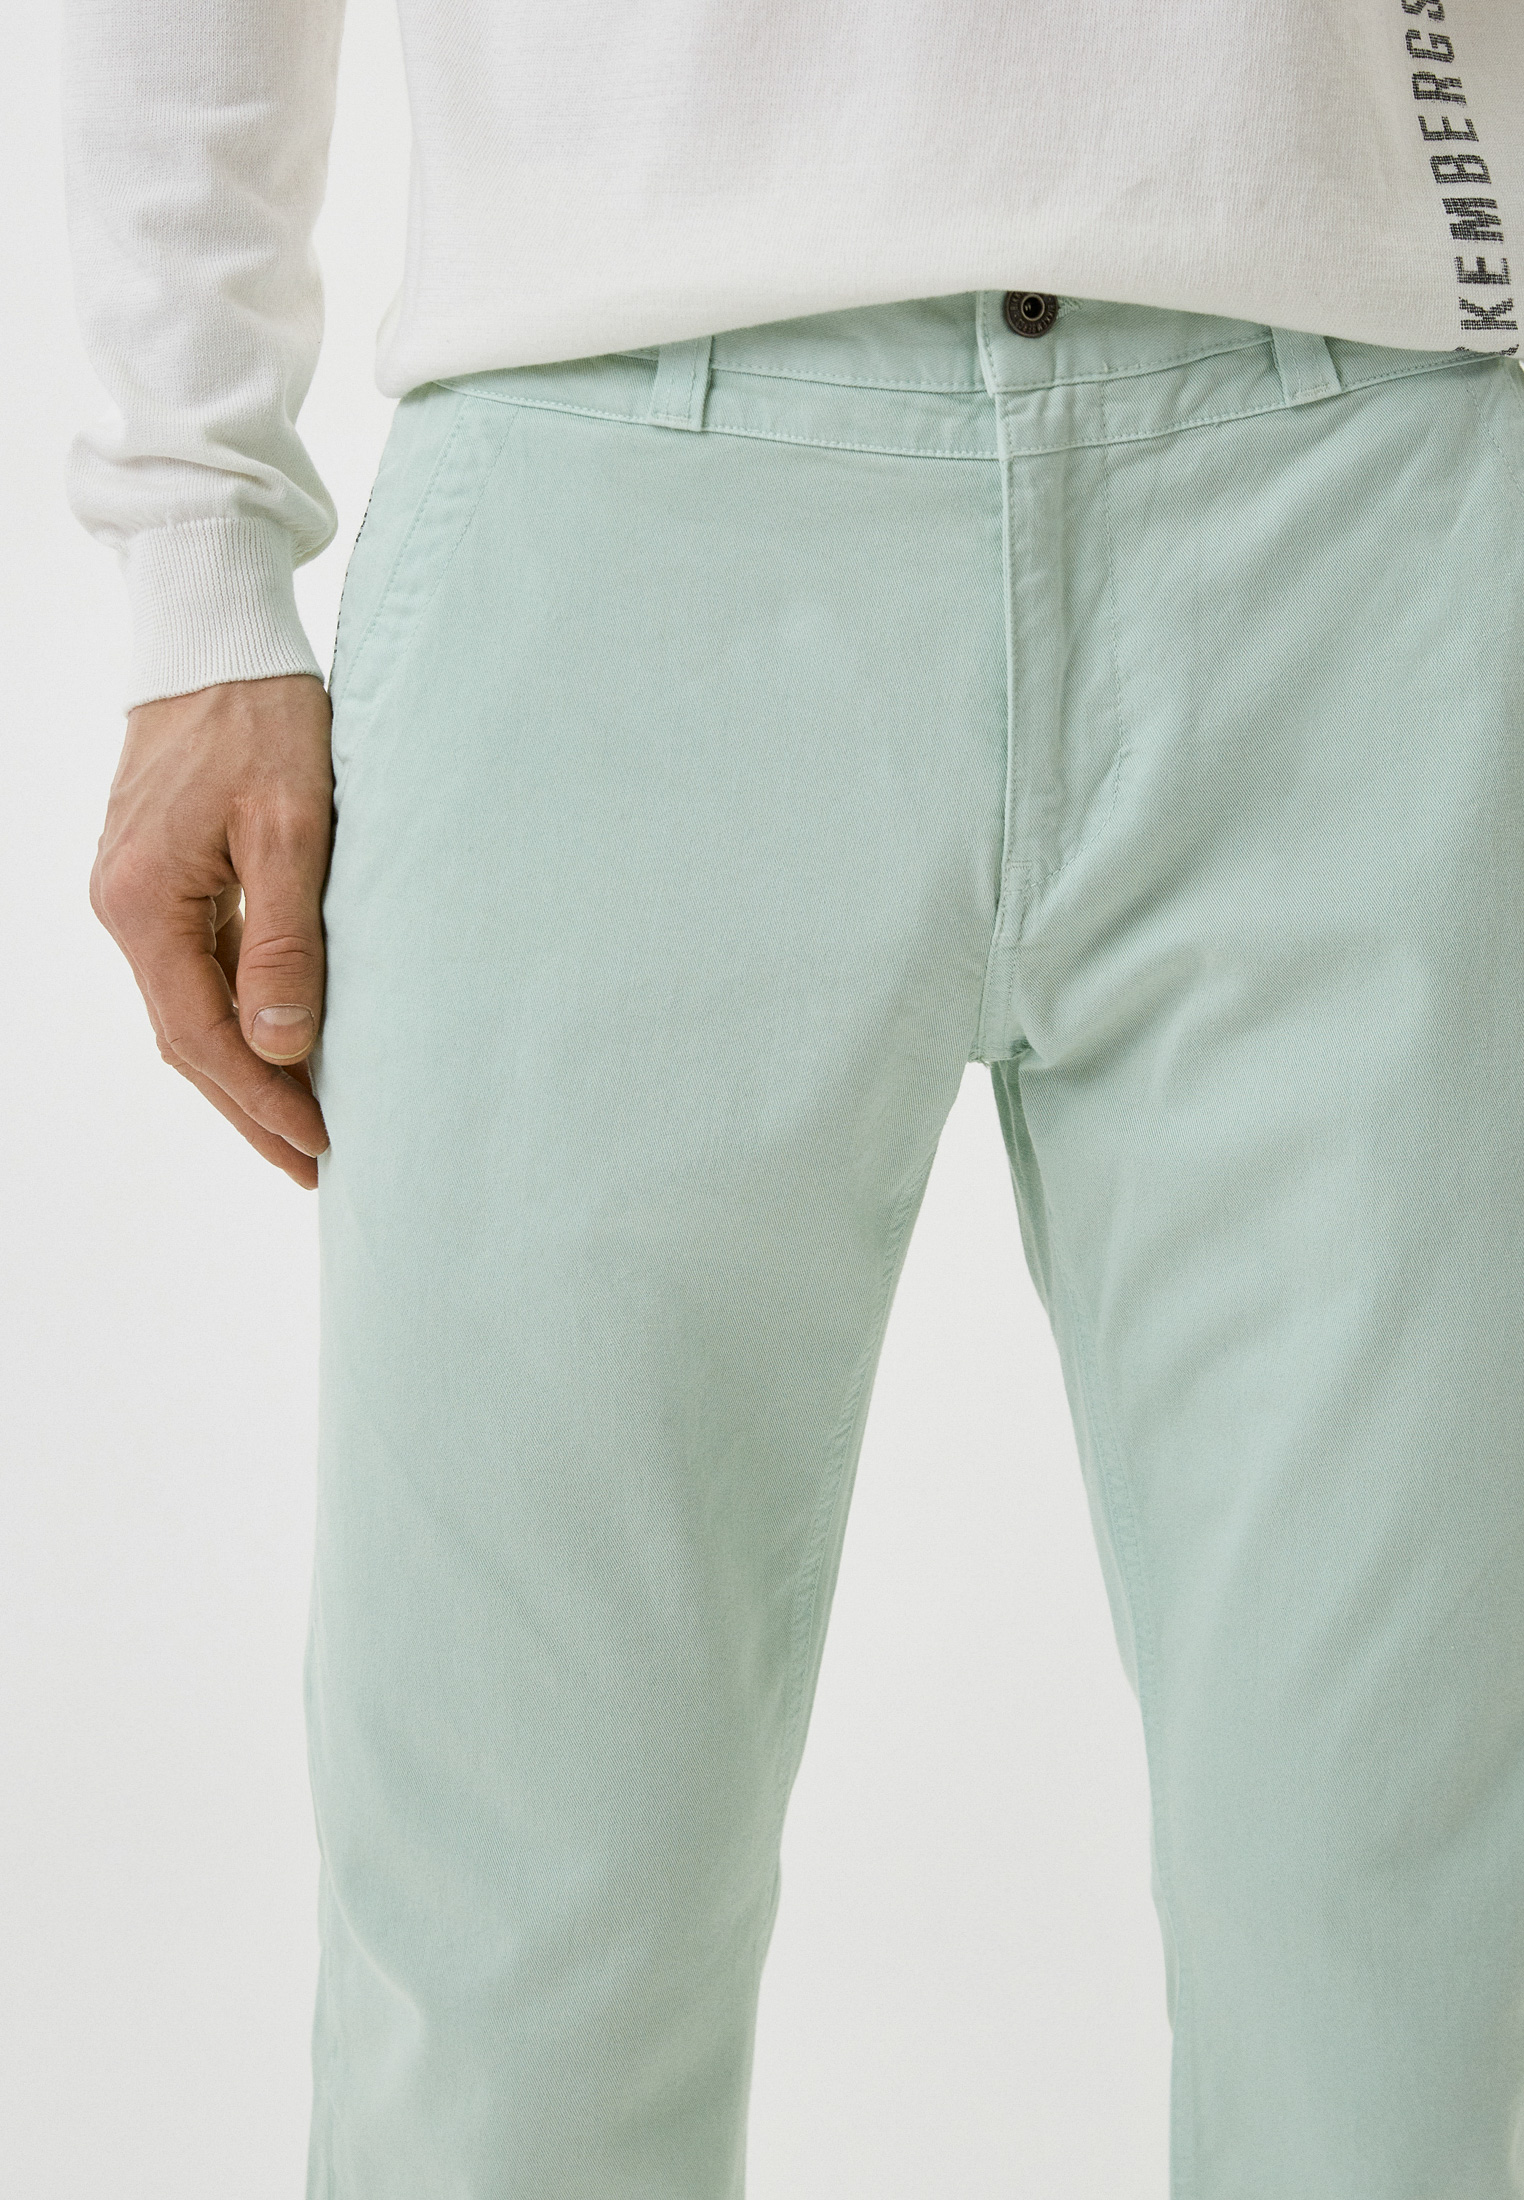 Мужские повседневные брюки Bikkembergs (Биккембергс) C P 111 00 S 3394: изображение 4